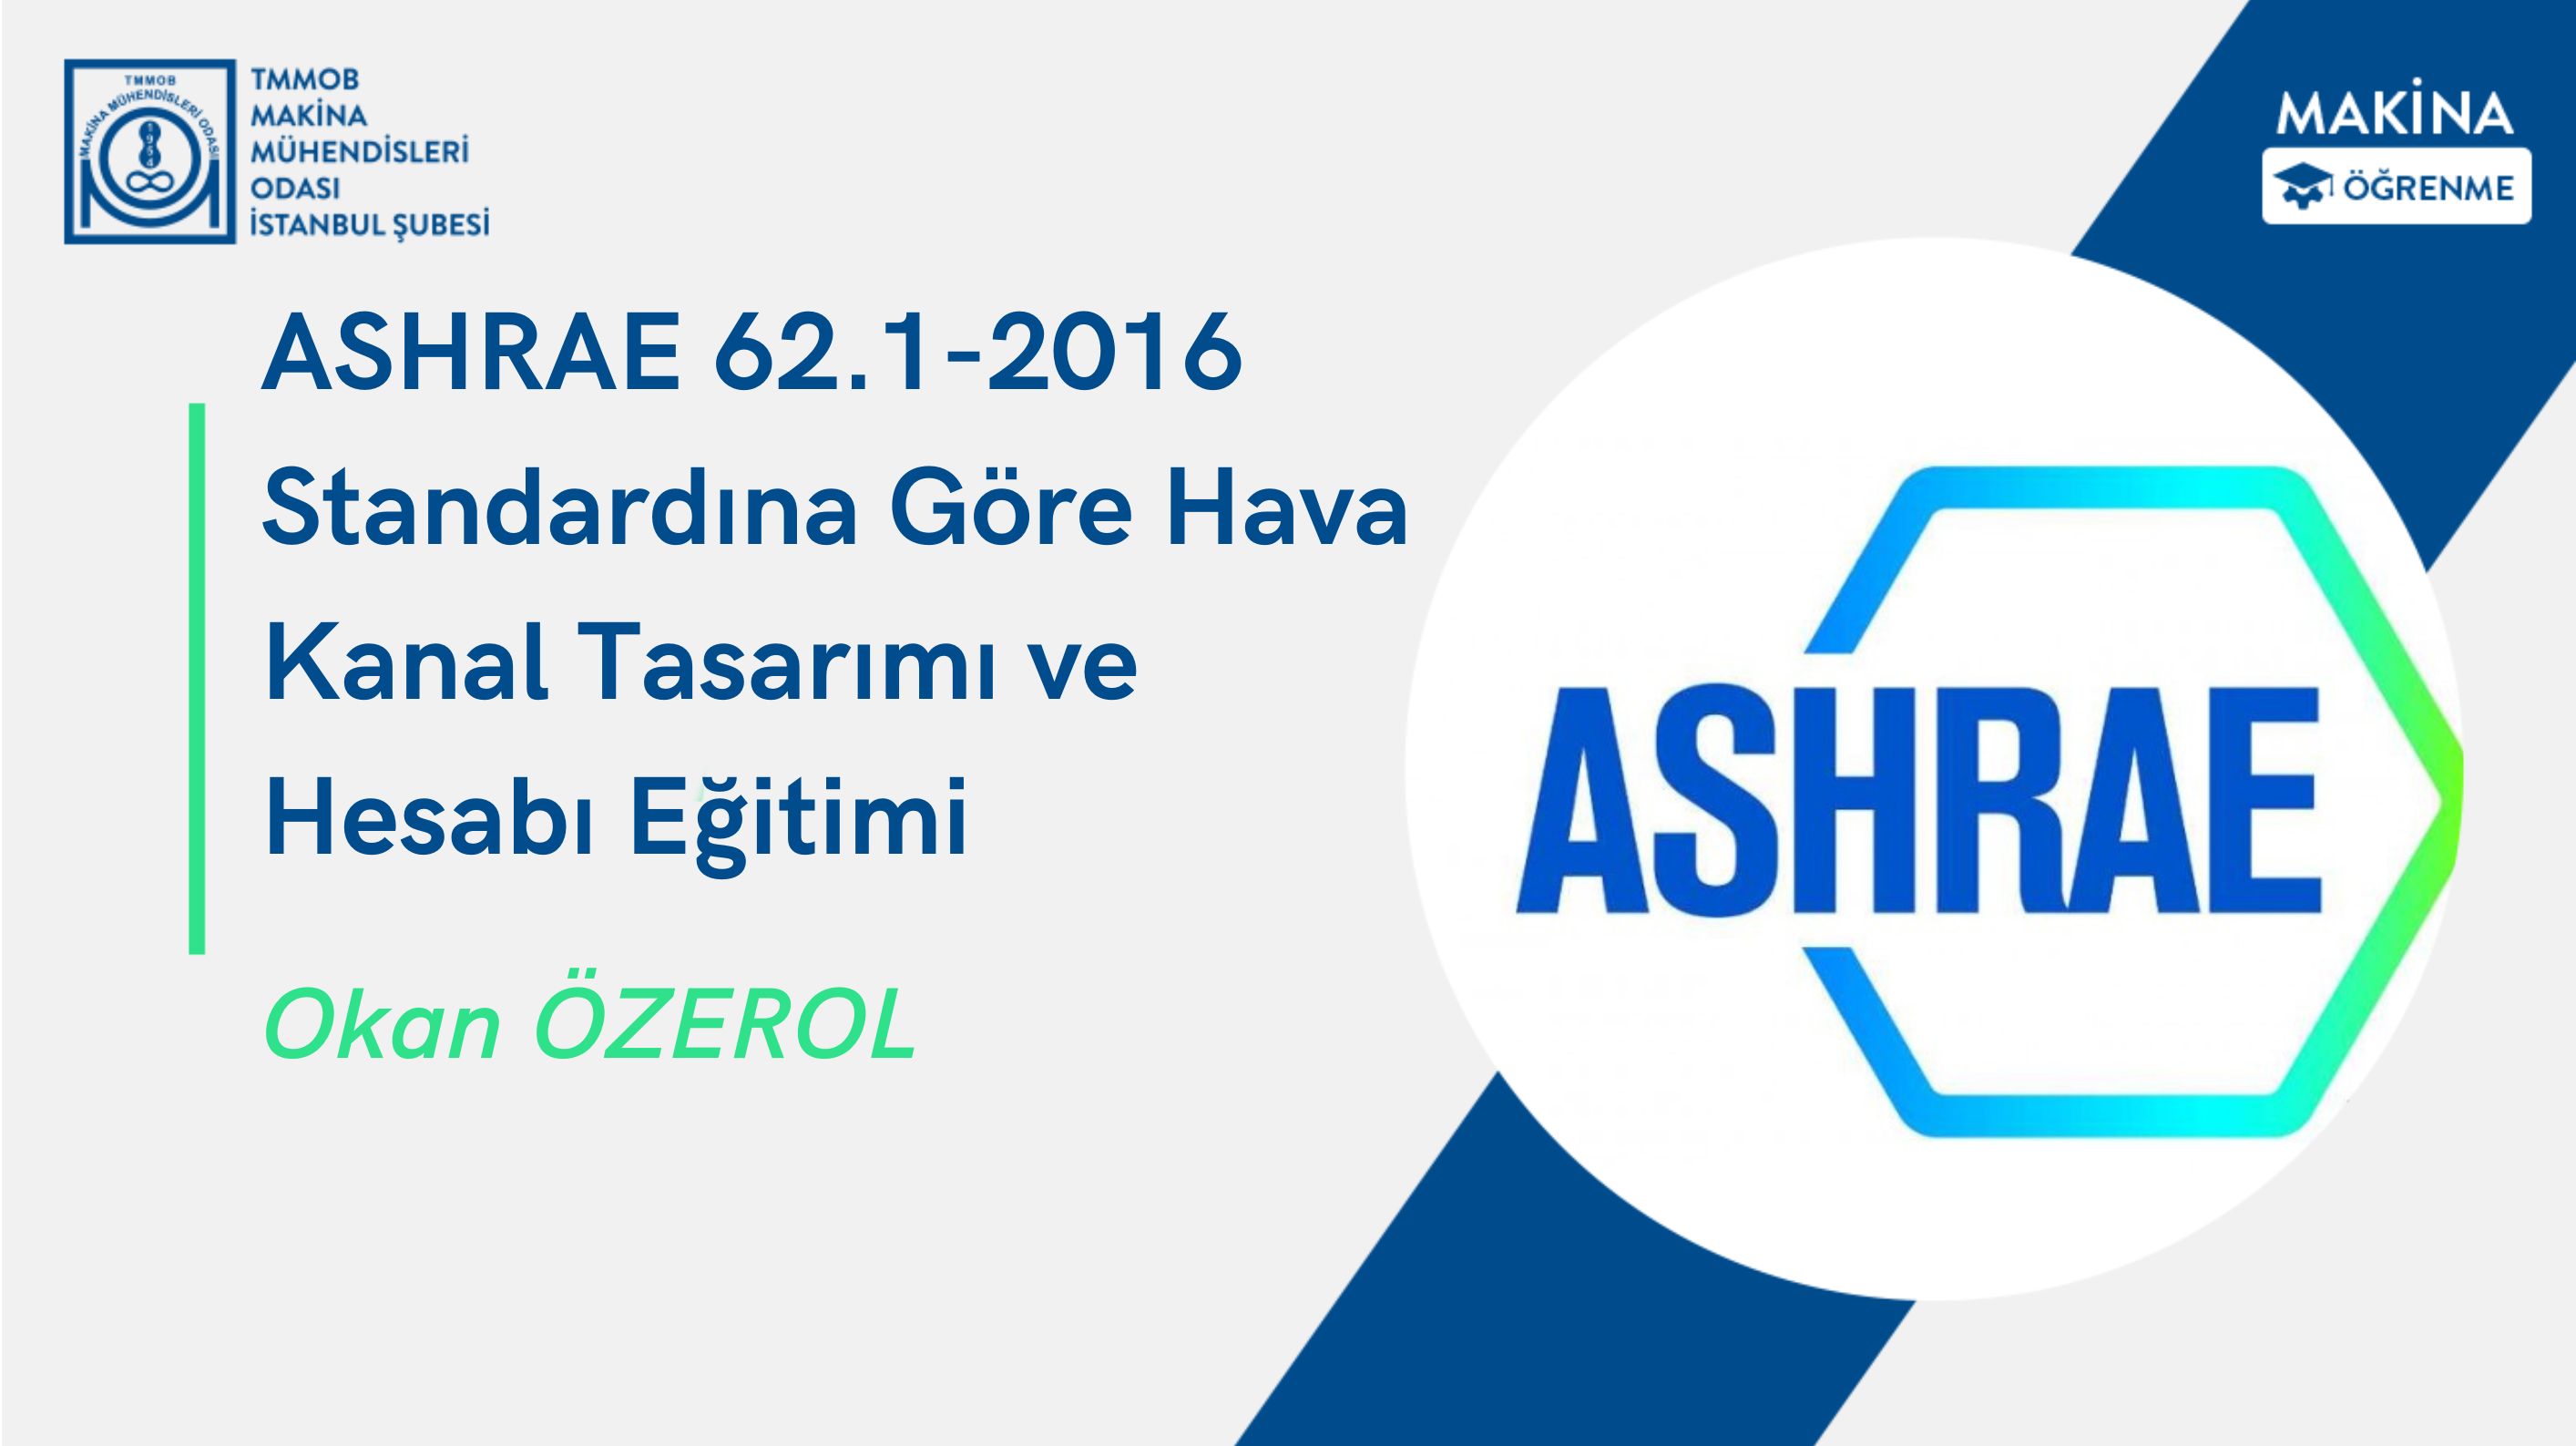 ASHRAE 62.1-2016 Standardına Göre Hava Kanal Tasarımı ve Hesabı Eğitimi